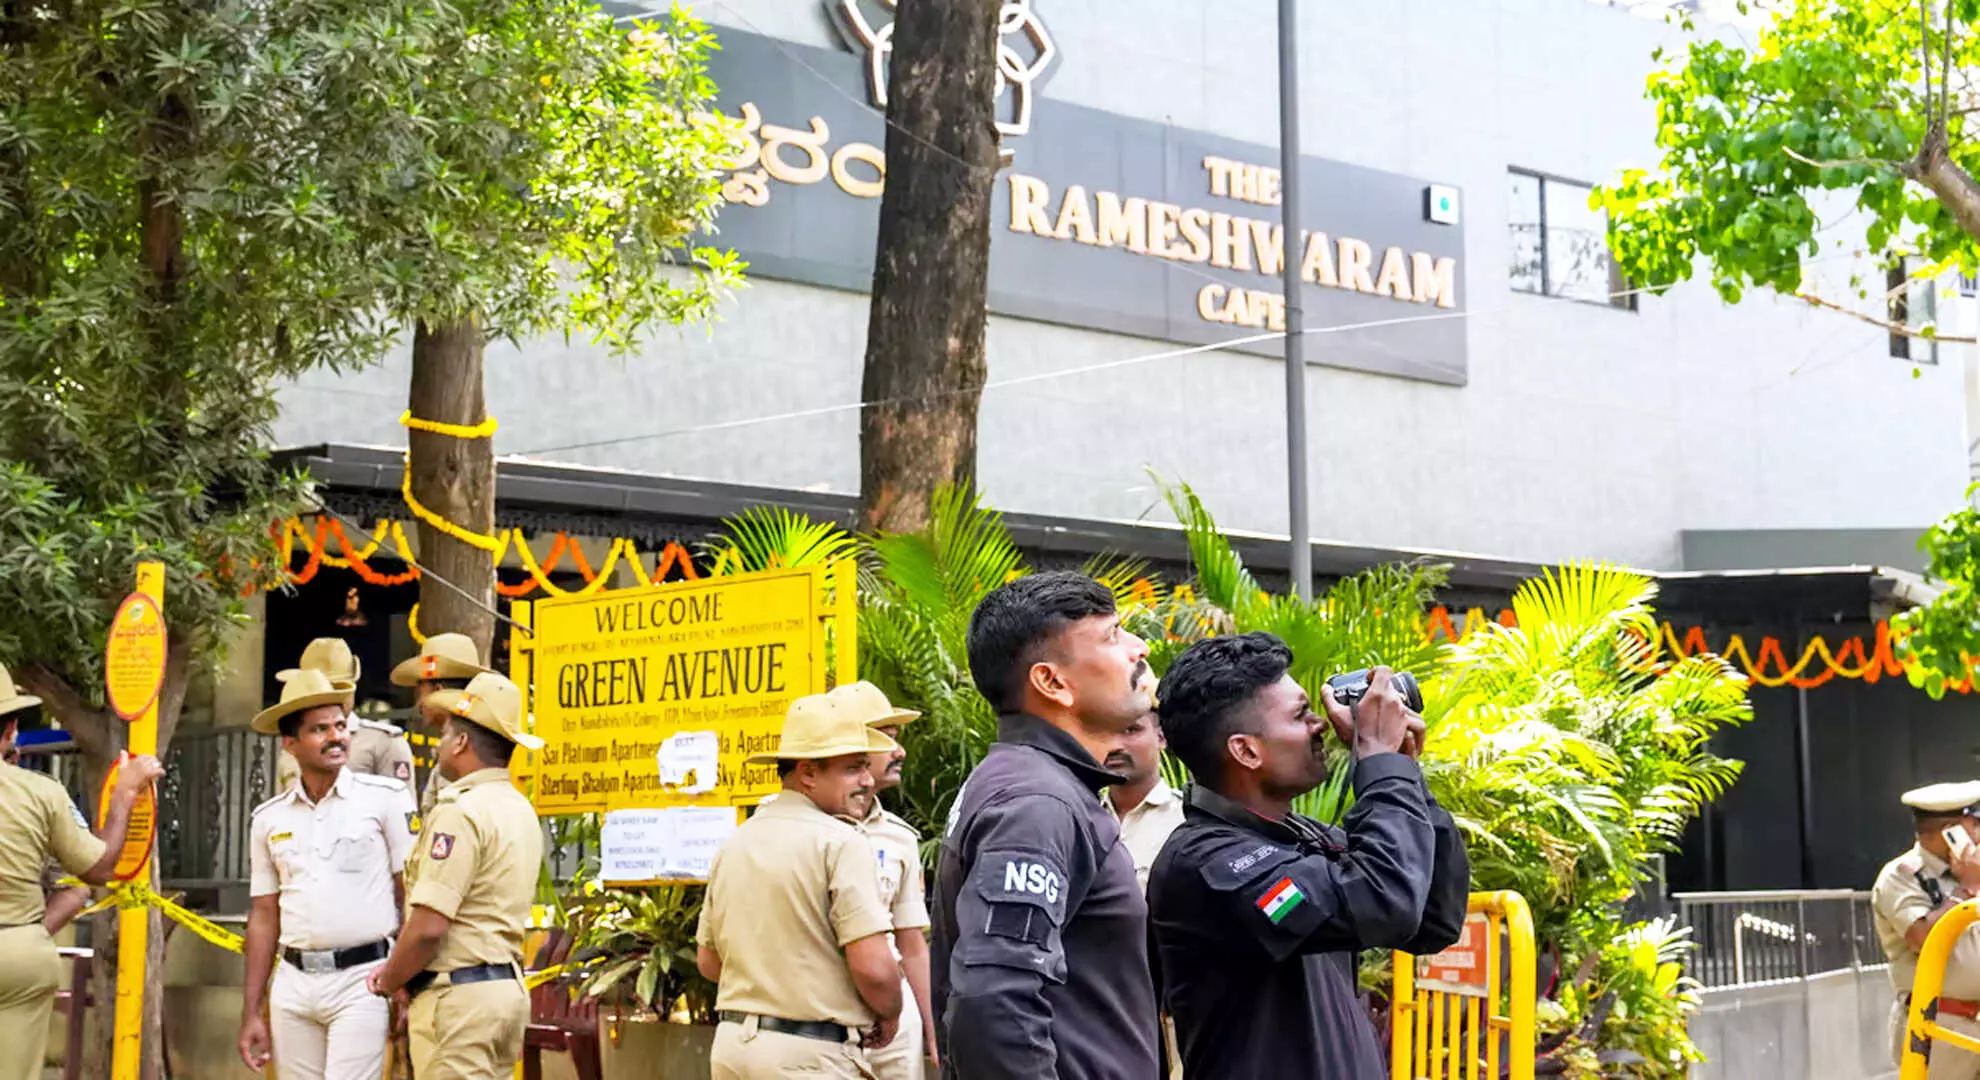 रामेश्वरम कैफे विस्फोट: मुख्य साजिशकर्ता को एनआईए ने तीन राज्यों में छापेमारी के बाद गिरफ्तार किया